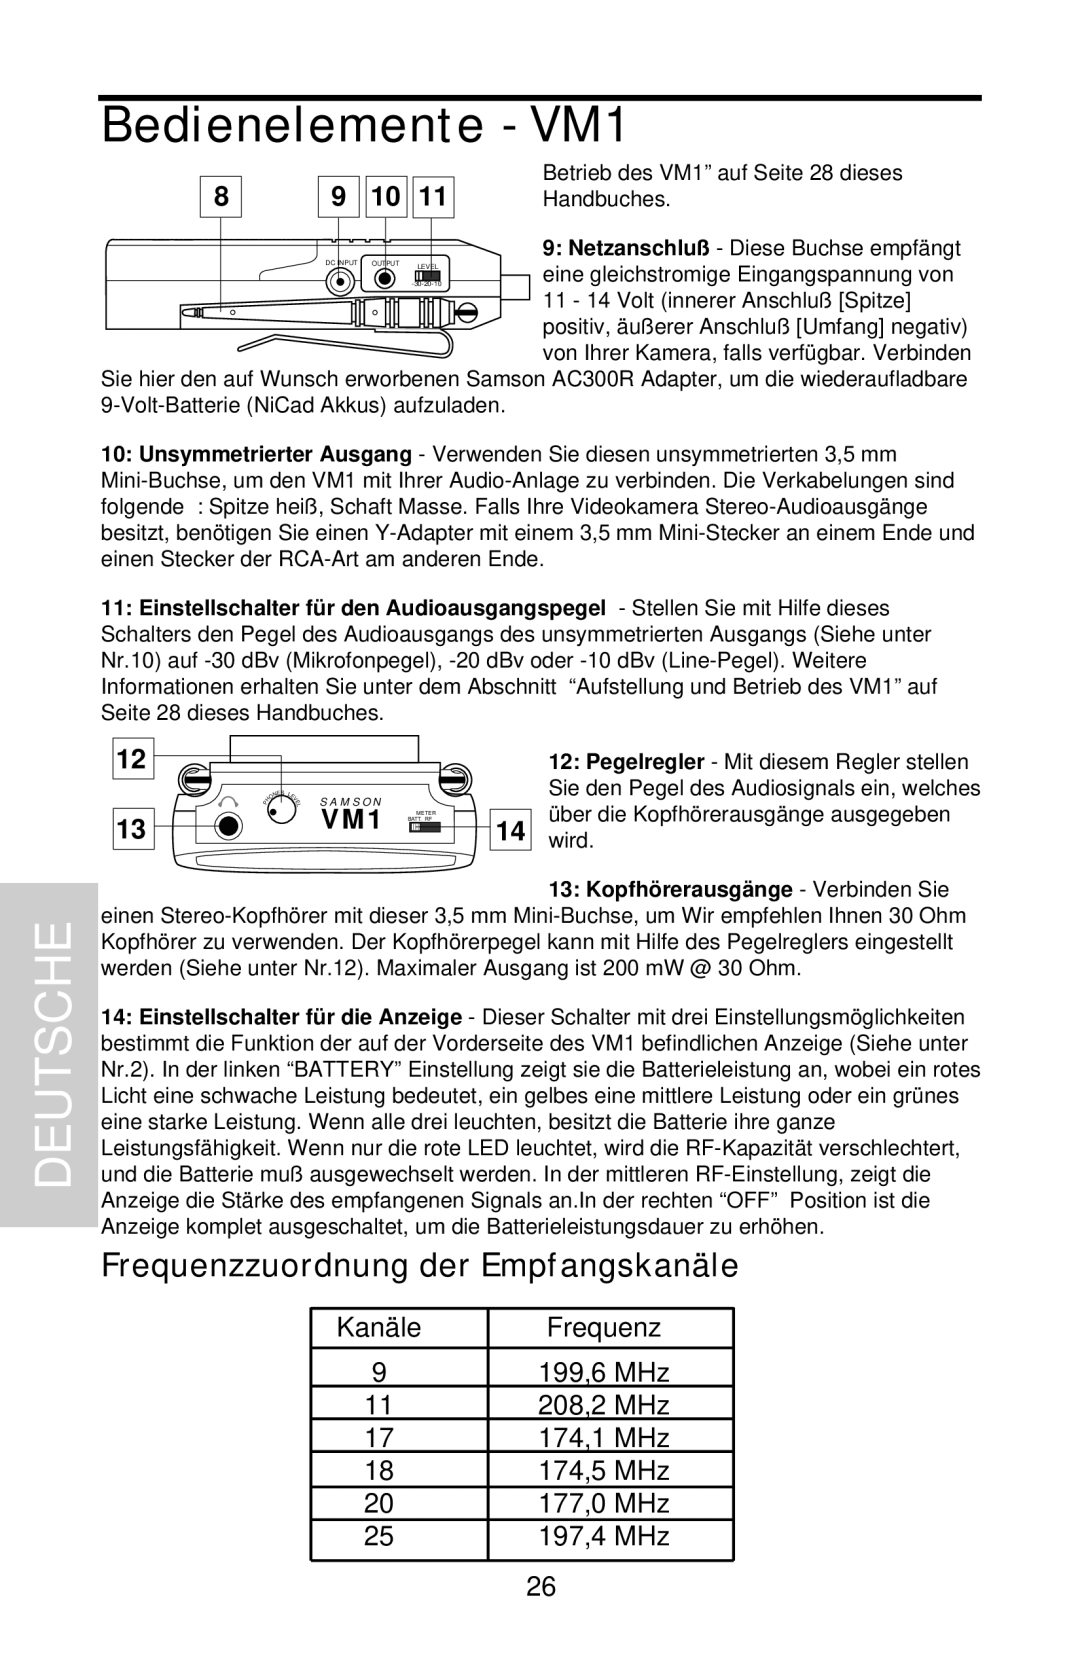 Samson VHF Micro TRUE DIVERSITY WIRELESS owner manual Frequenzzuordnung der Empfangskanäle, Deutsche, Bedienelemente - VM1 